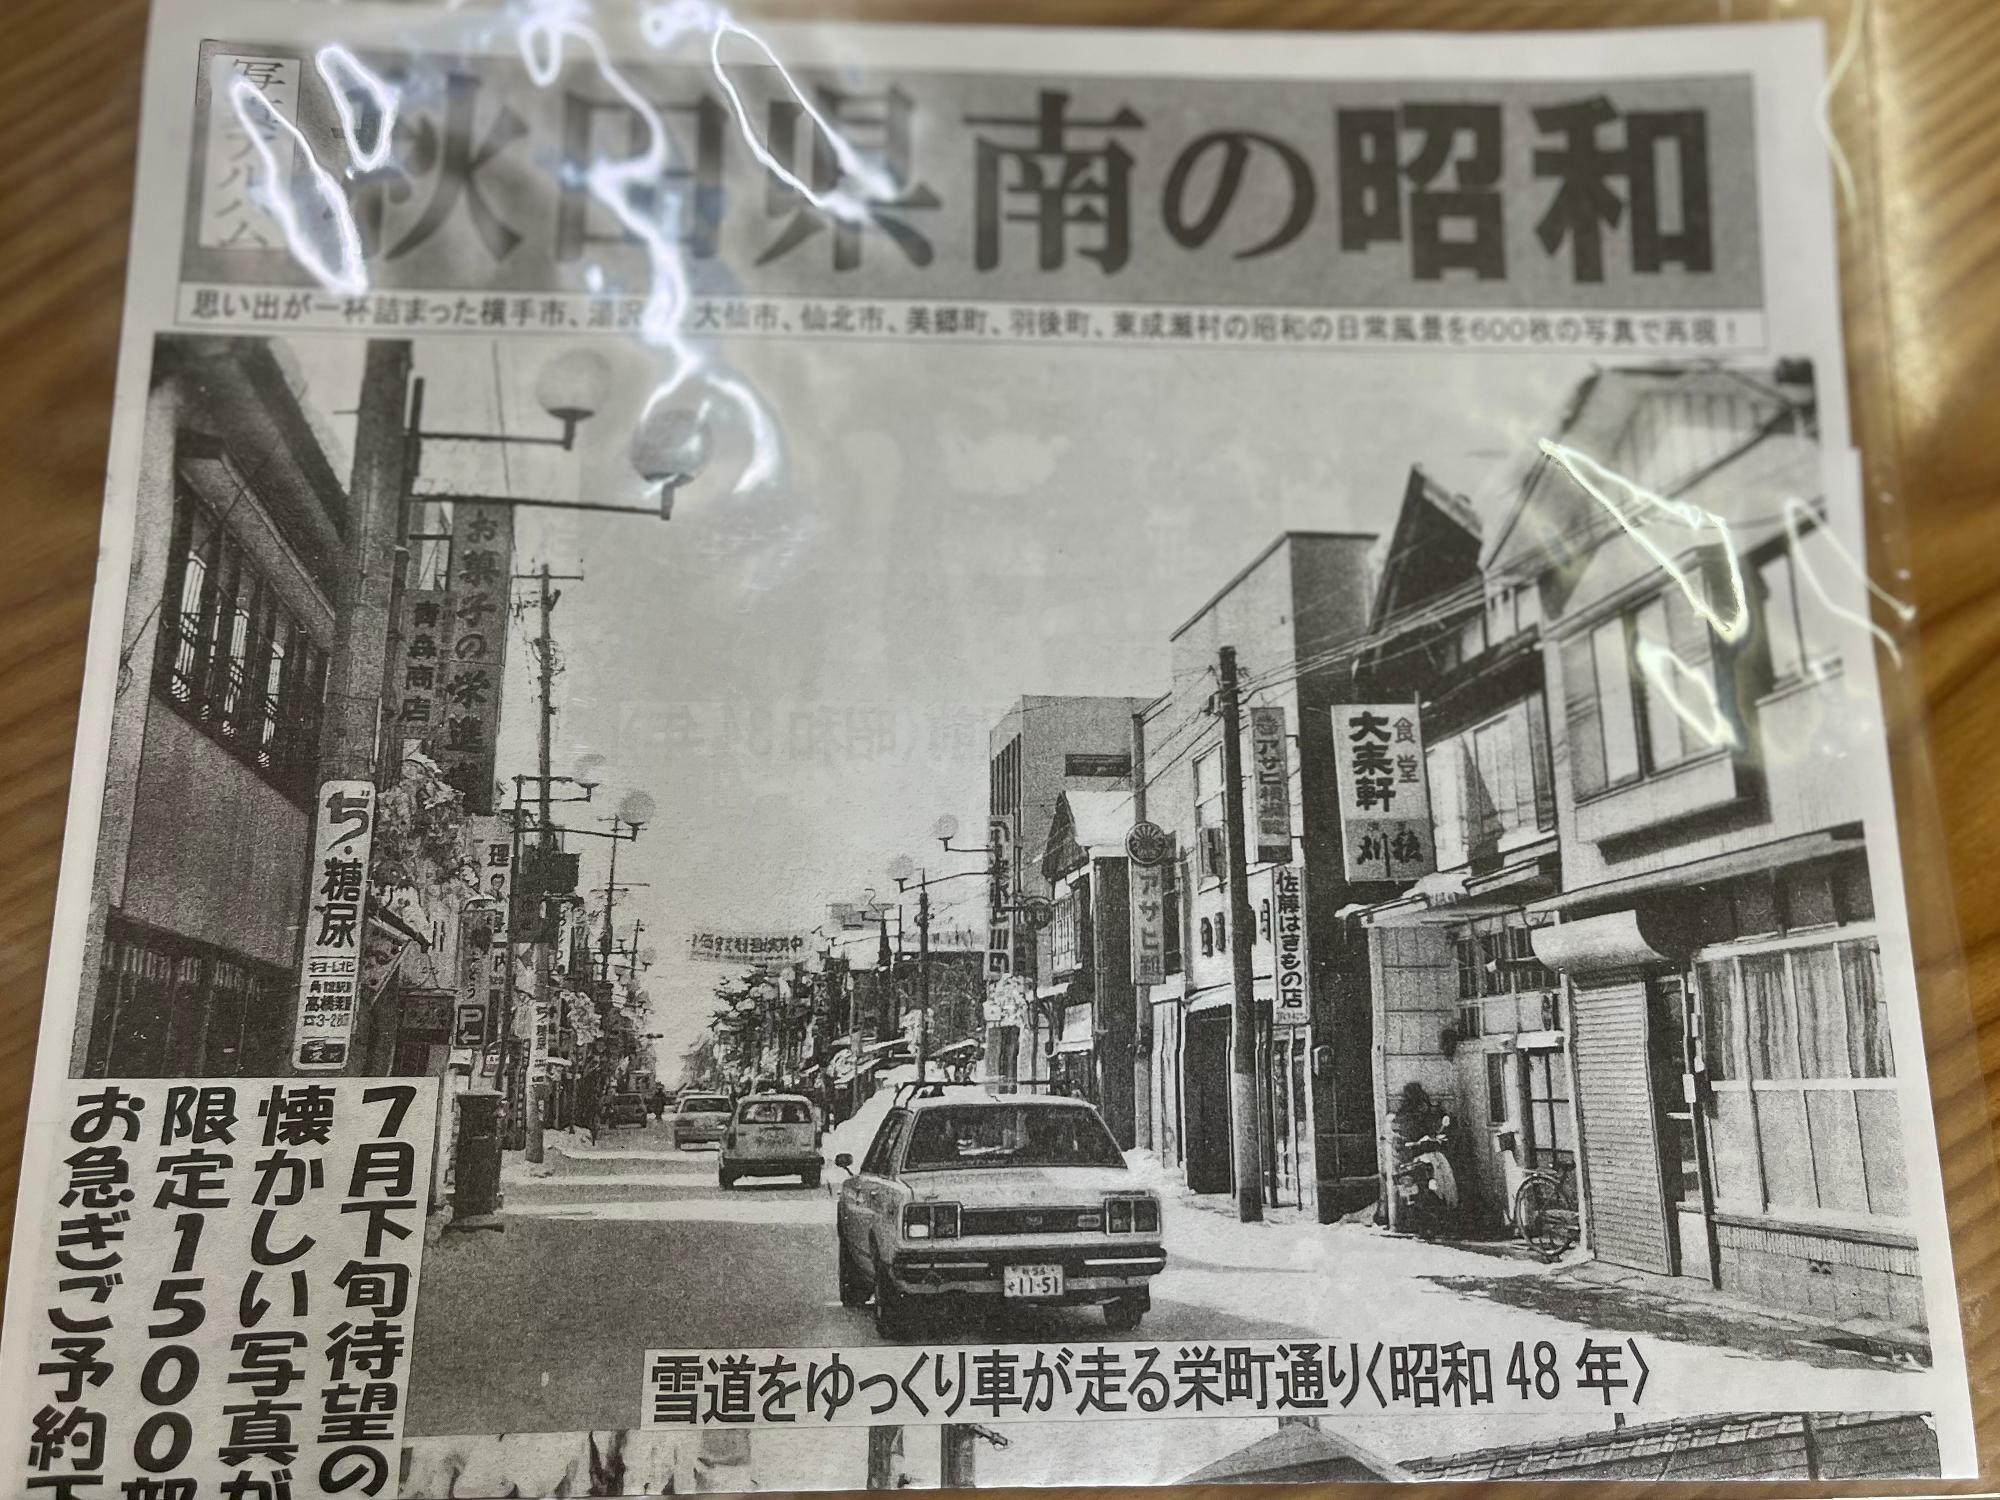 昭和48年に撮影された現在の花火通り商店街